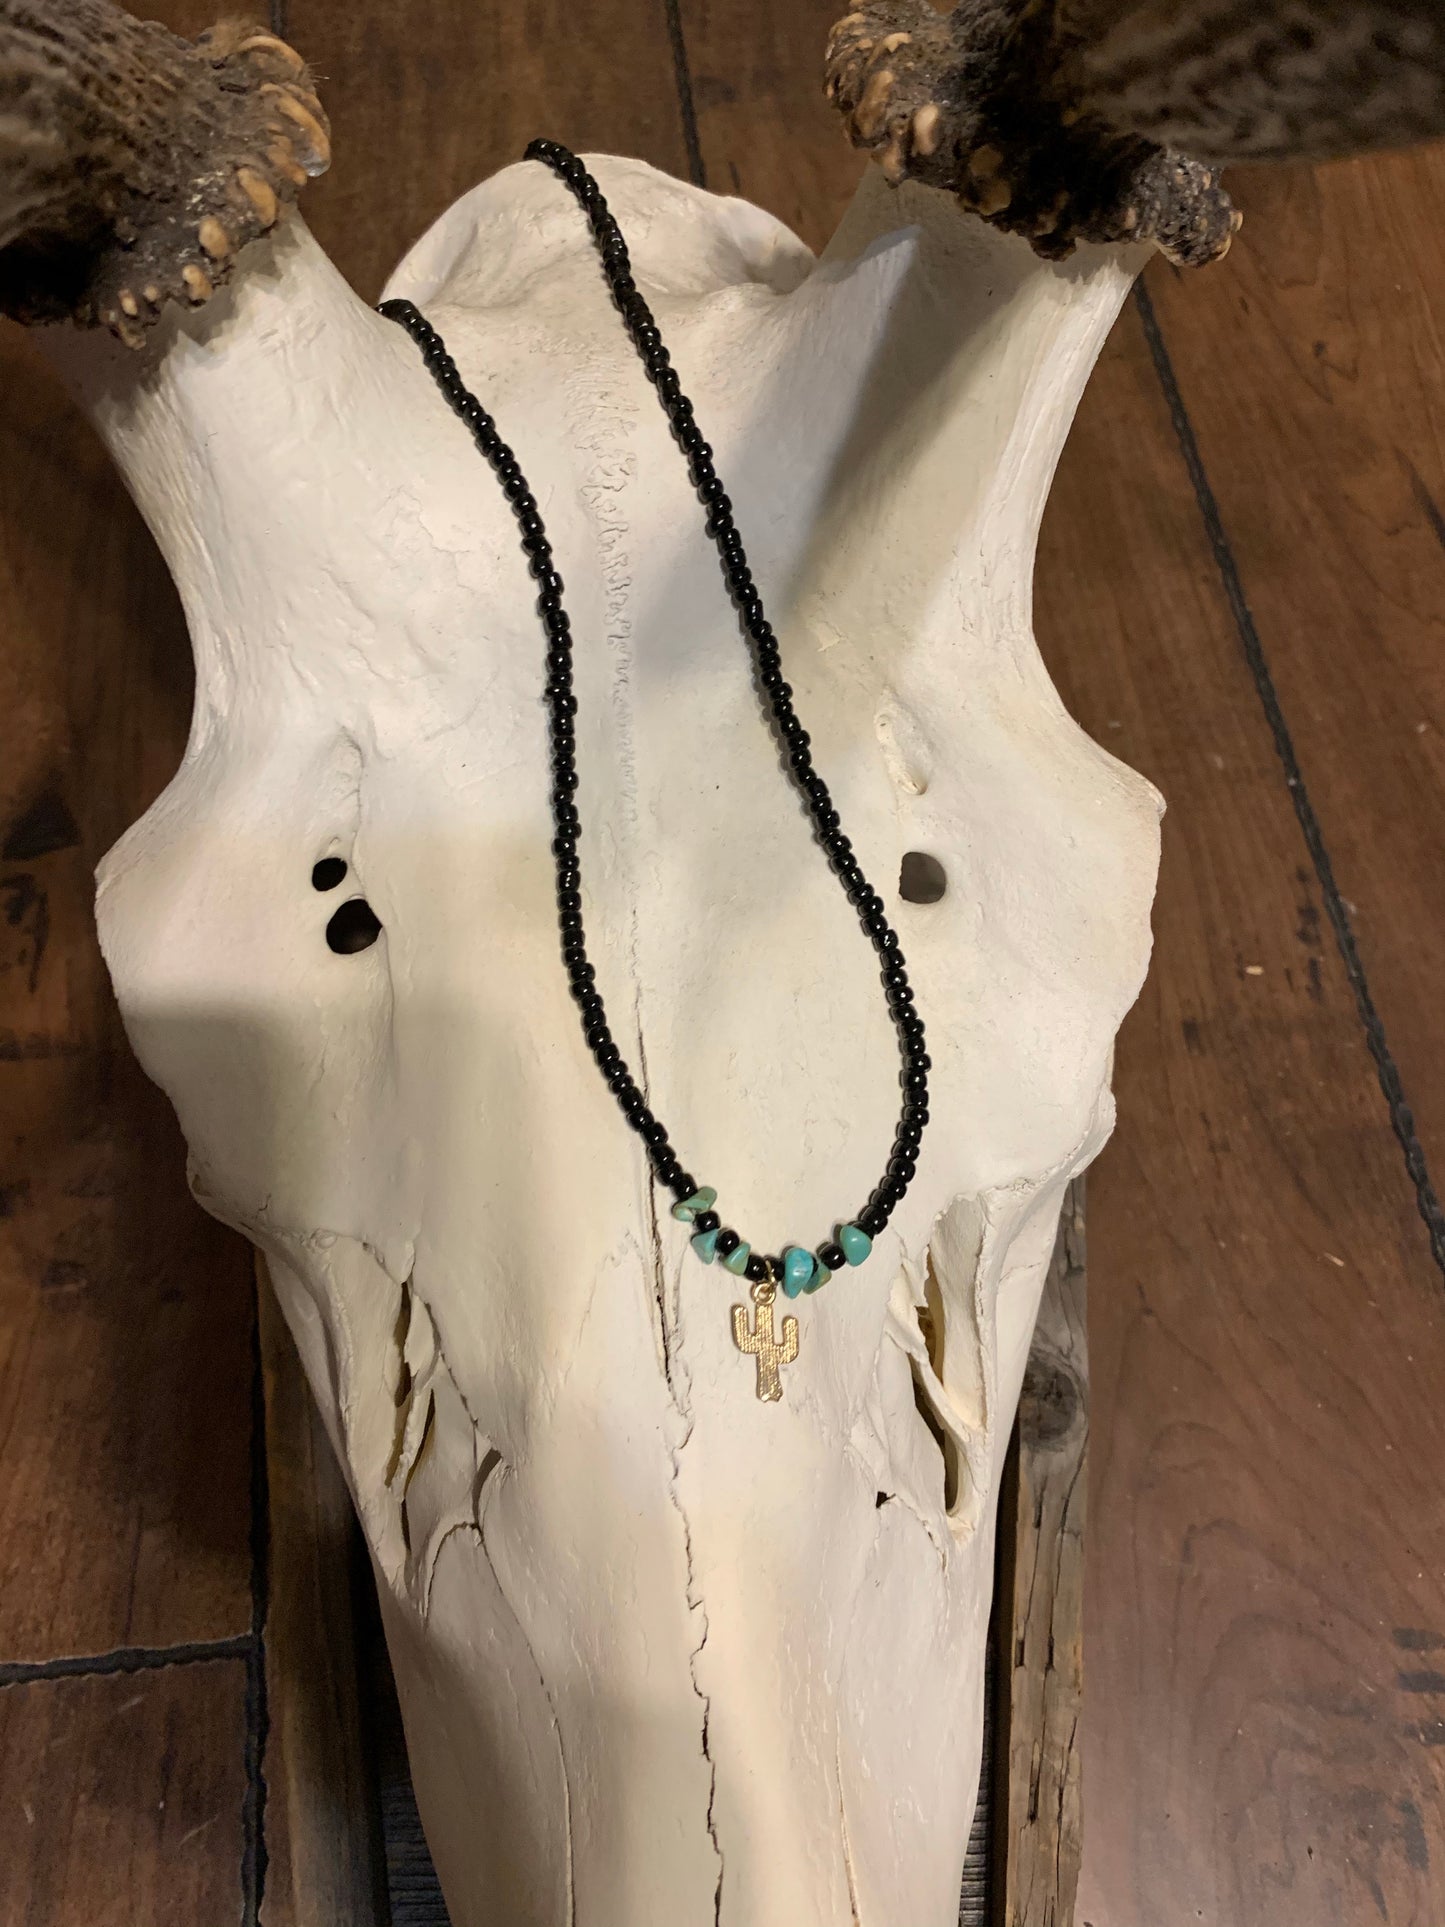 Stony turquoise necklace